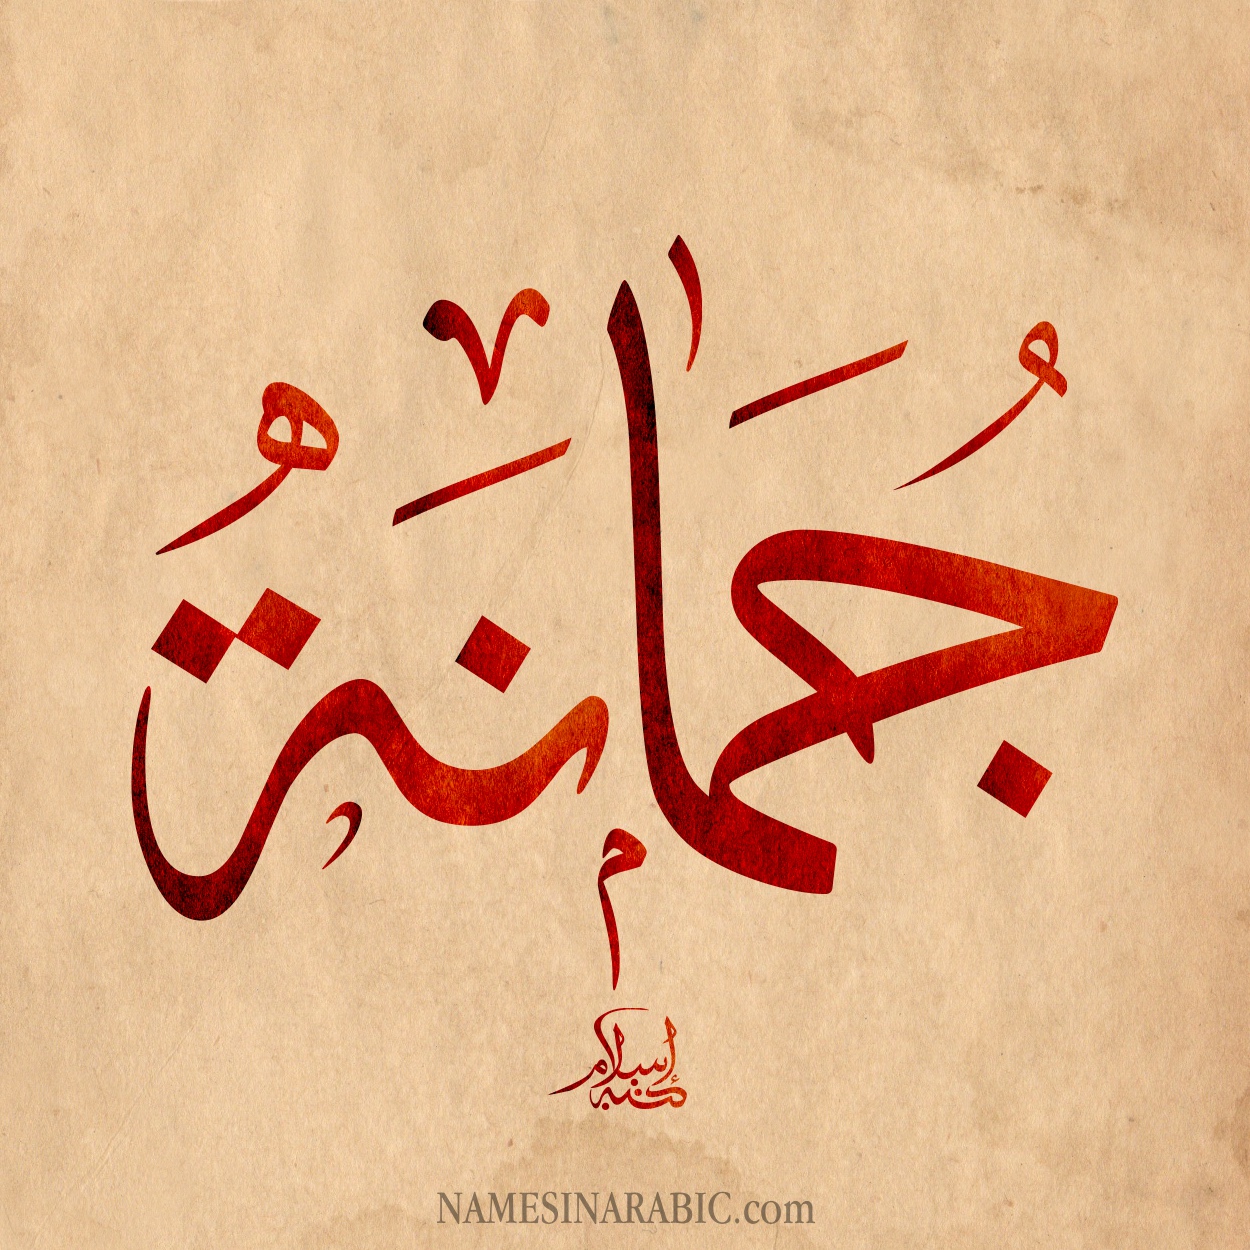 Jumanah-Name-in-Arabic-Calligraphy.jpg